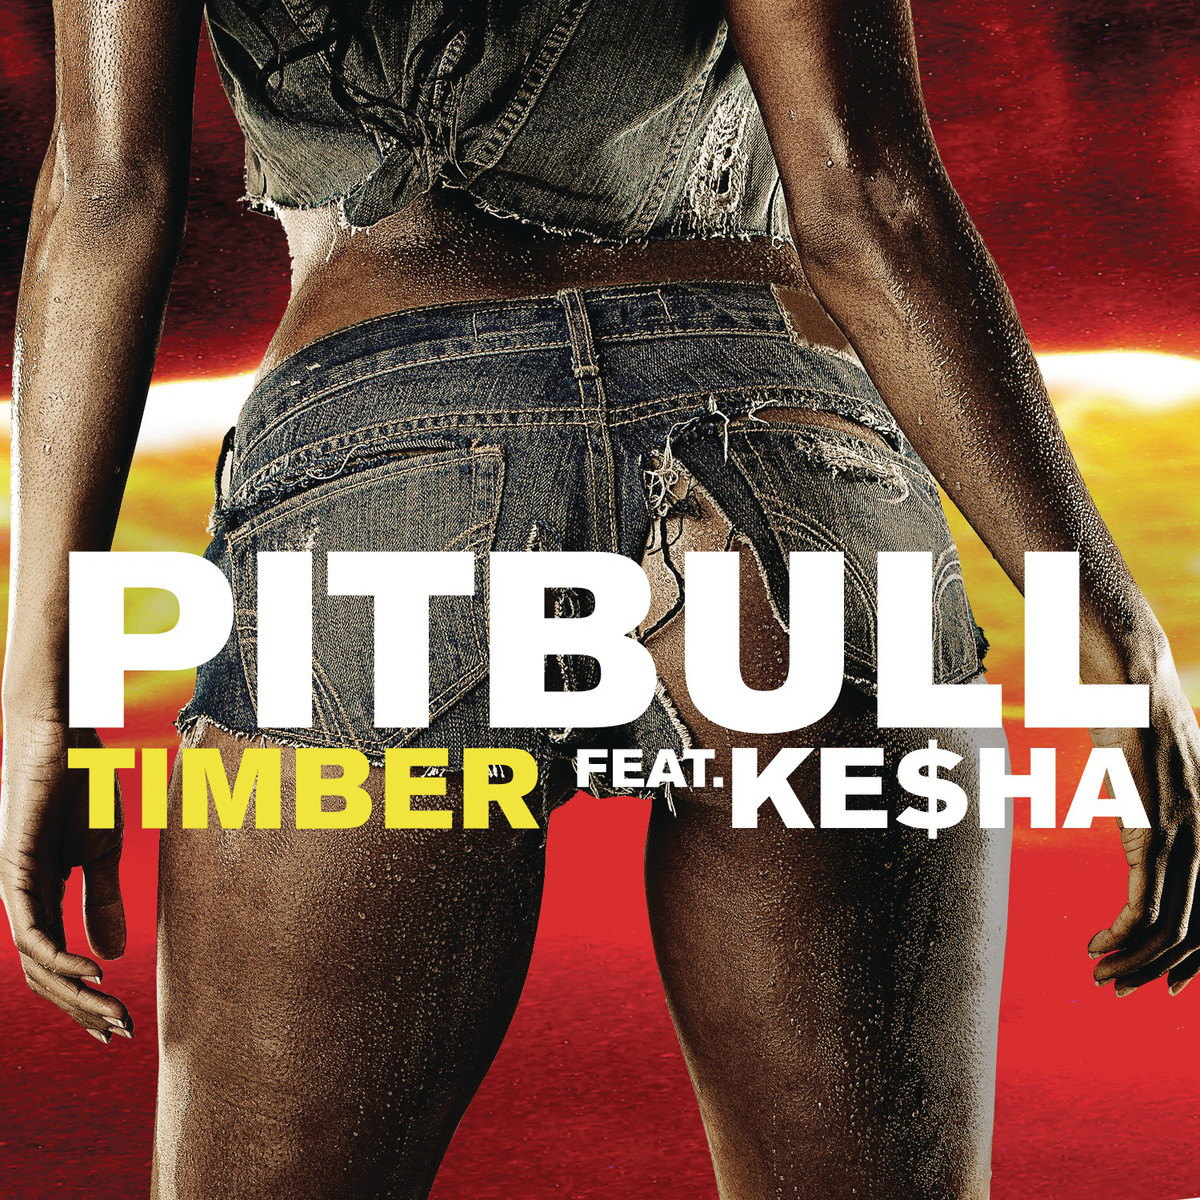 Pitbull – Timber ft. Kesha [Acoustic]